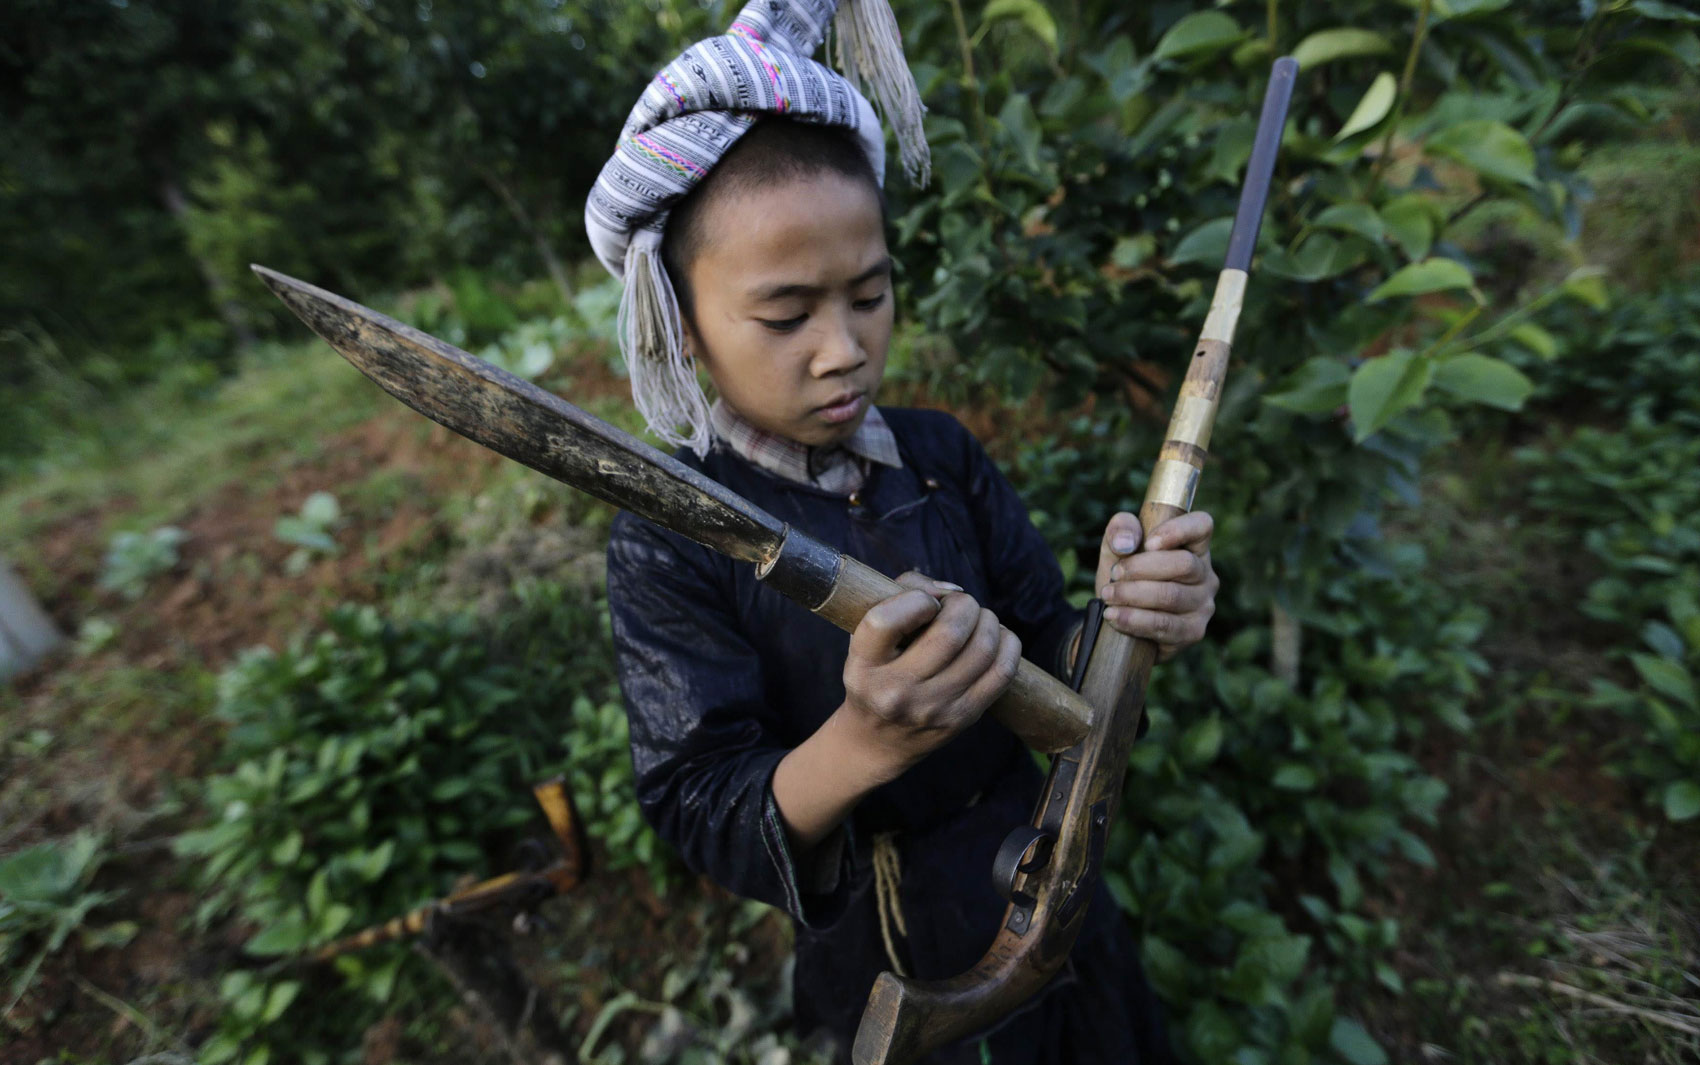 Gun Diuliang, de 10 anos, bate com o fundo de um facão contra sua arma para tampar o recipiente de pólvora antes de praticar tiros na vila de Basha.